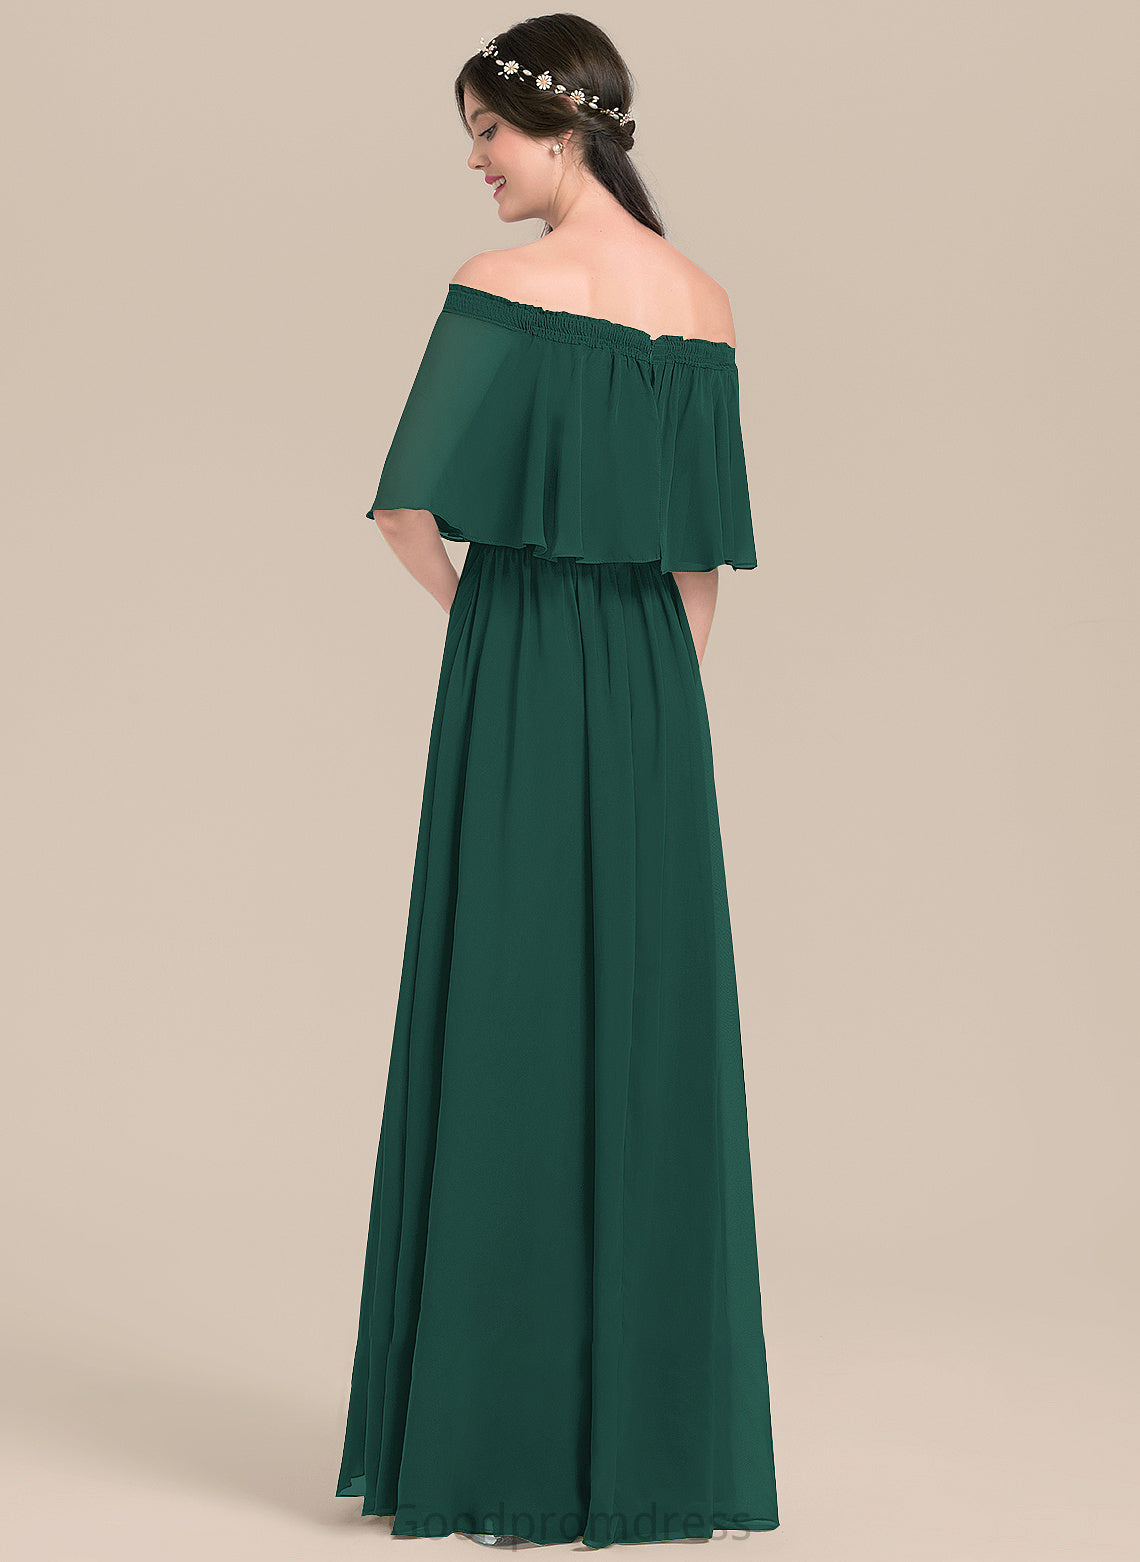 A-Line Neckline SplitFront Length Off-the-Shoulder Embellishment Fabric Silhouette Floor-Length Emelia A-Line/Princess Floor Length Bridesmaid Dresses